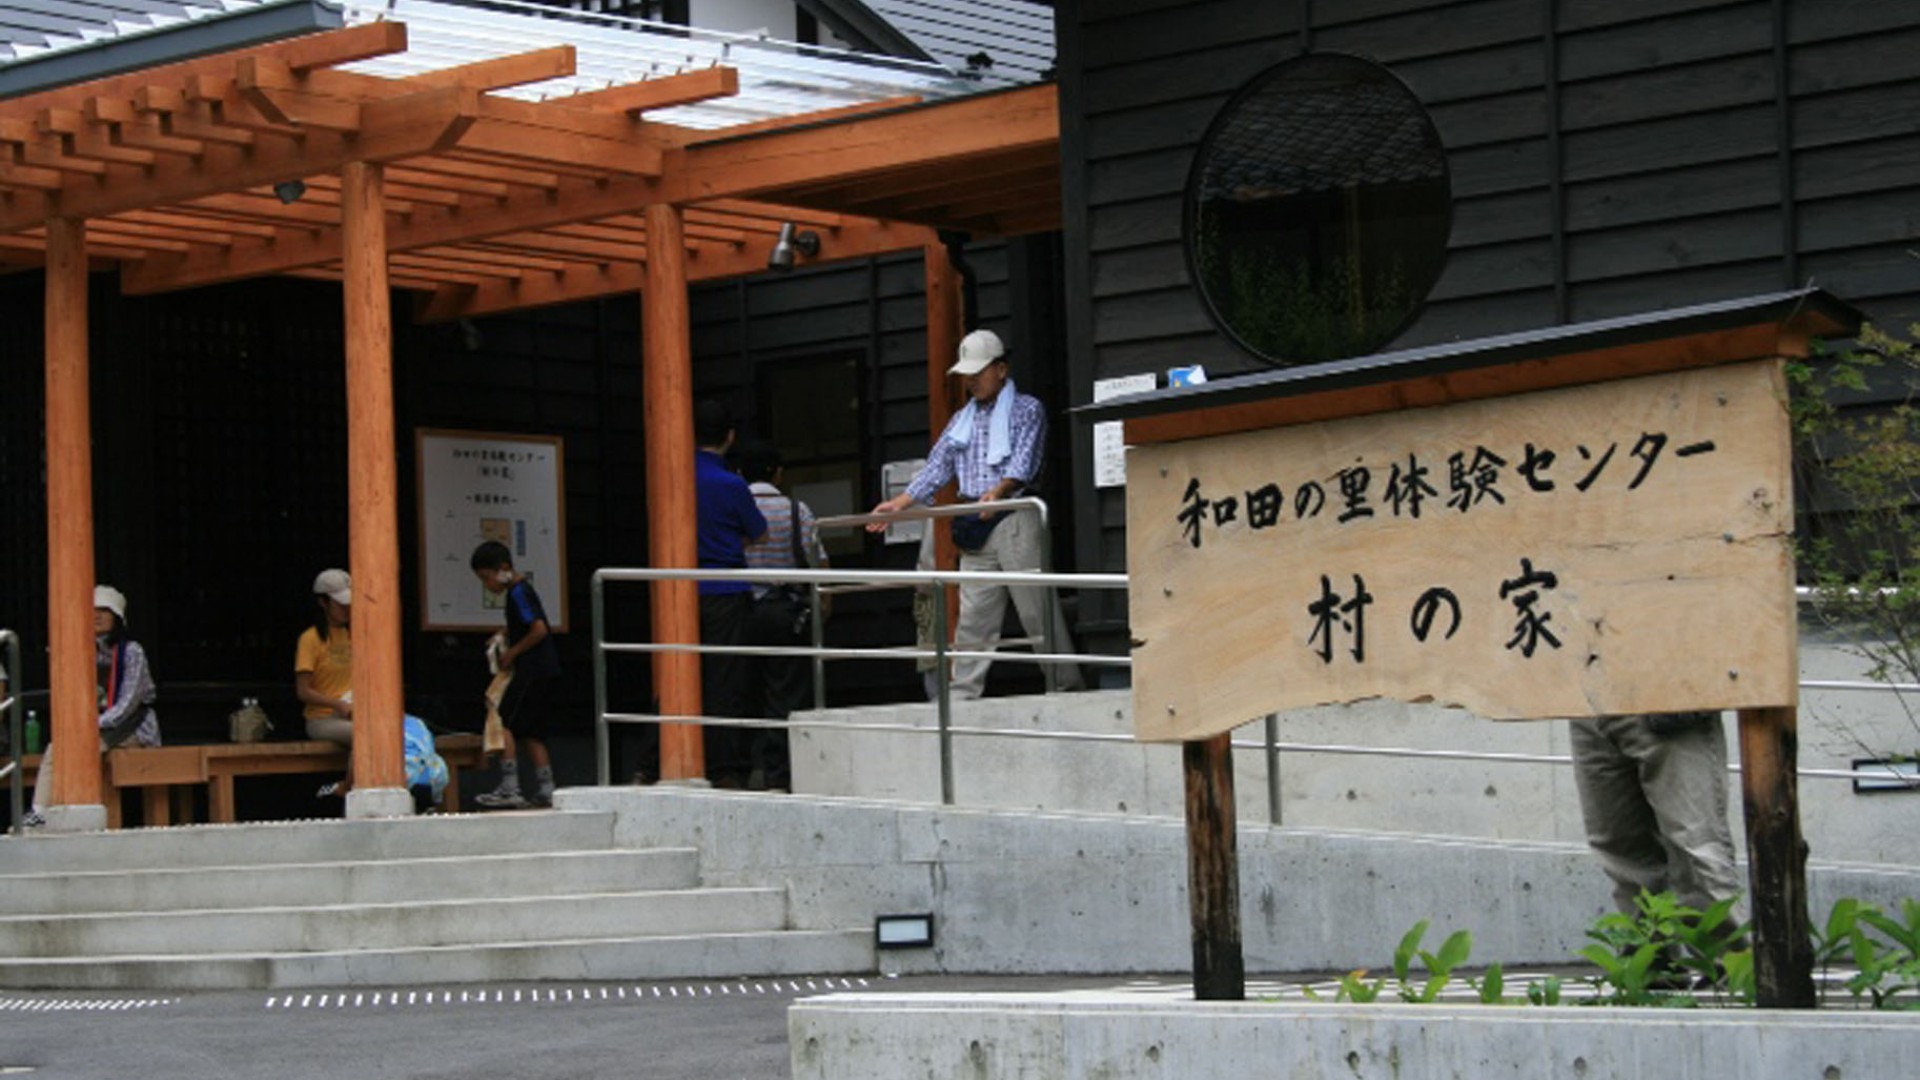 Casa del Pueblo del Centro de Experiencias Wada no Sato